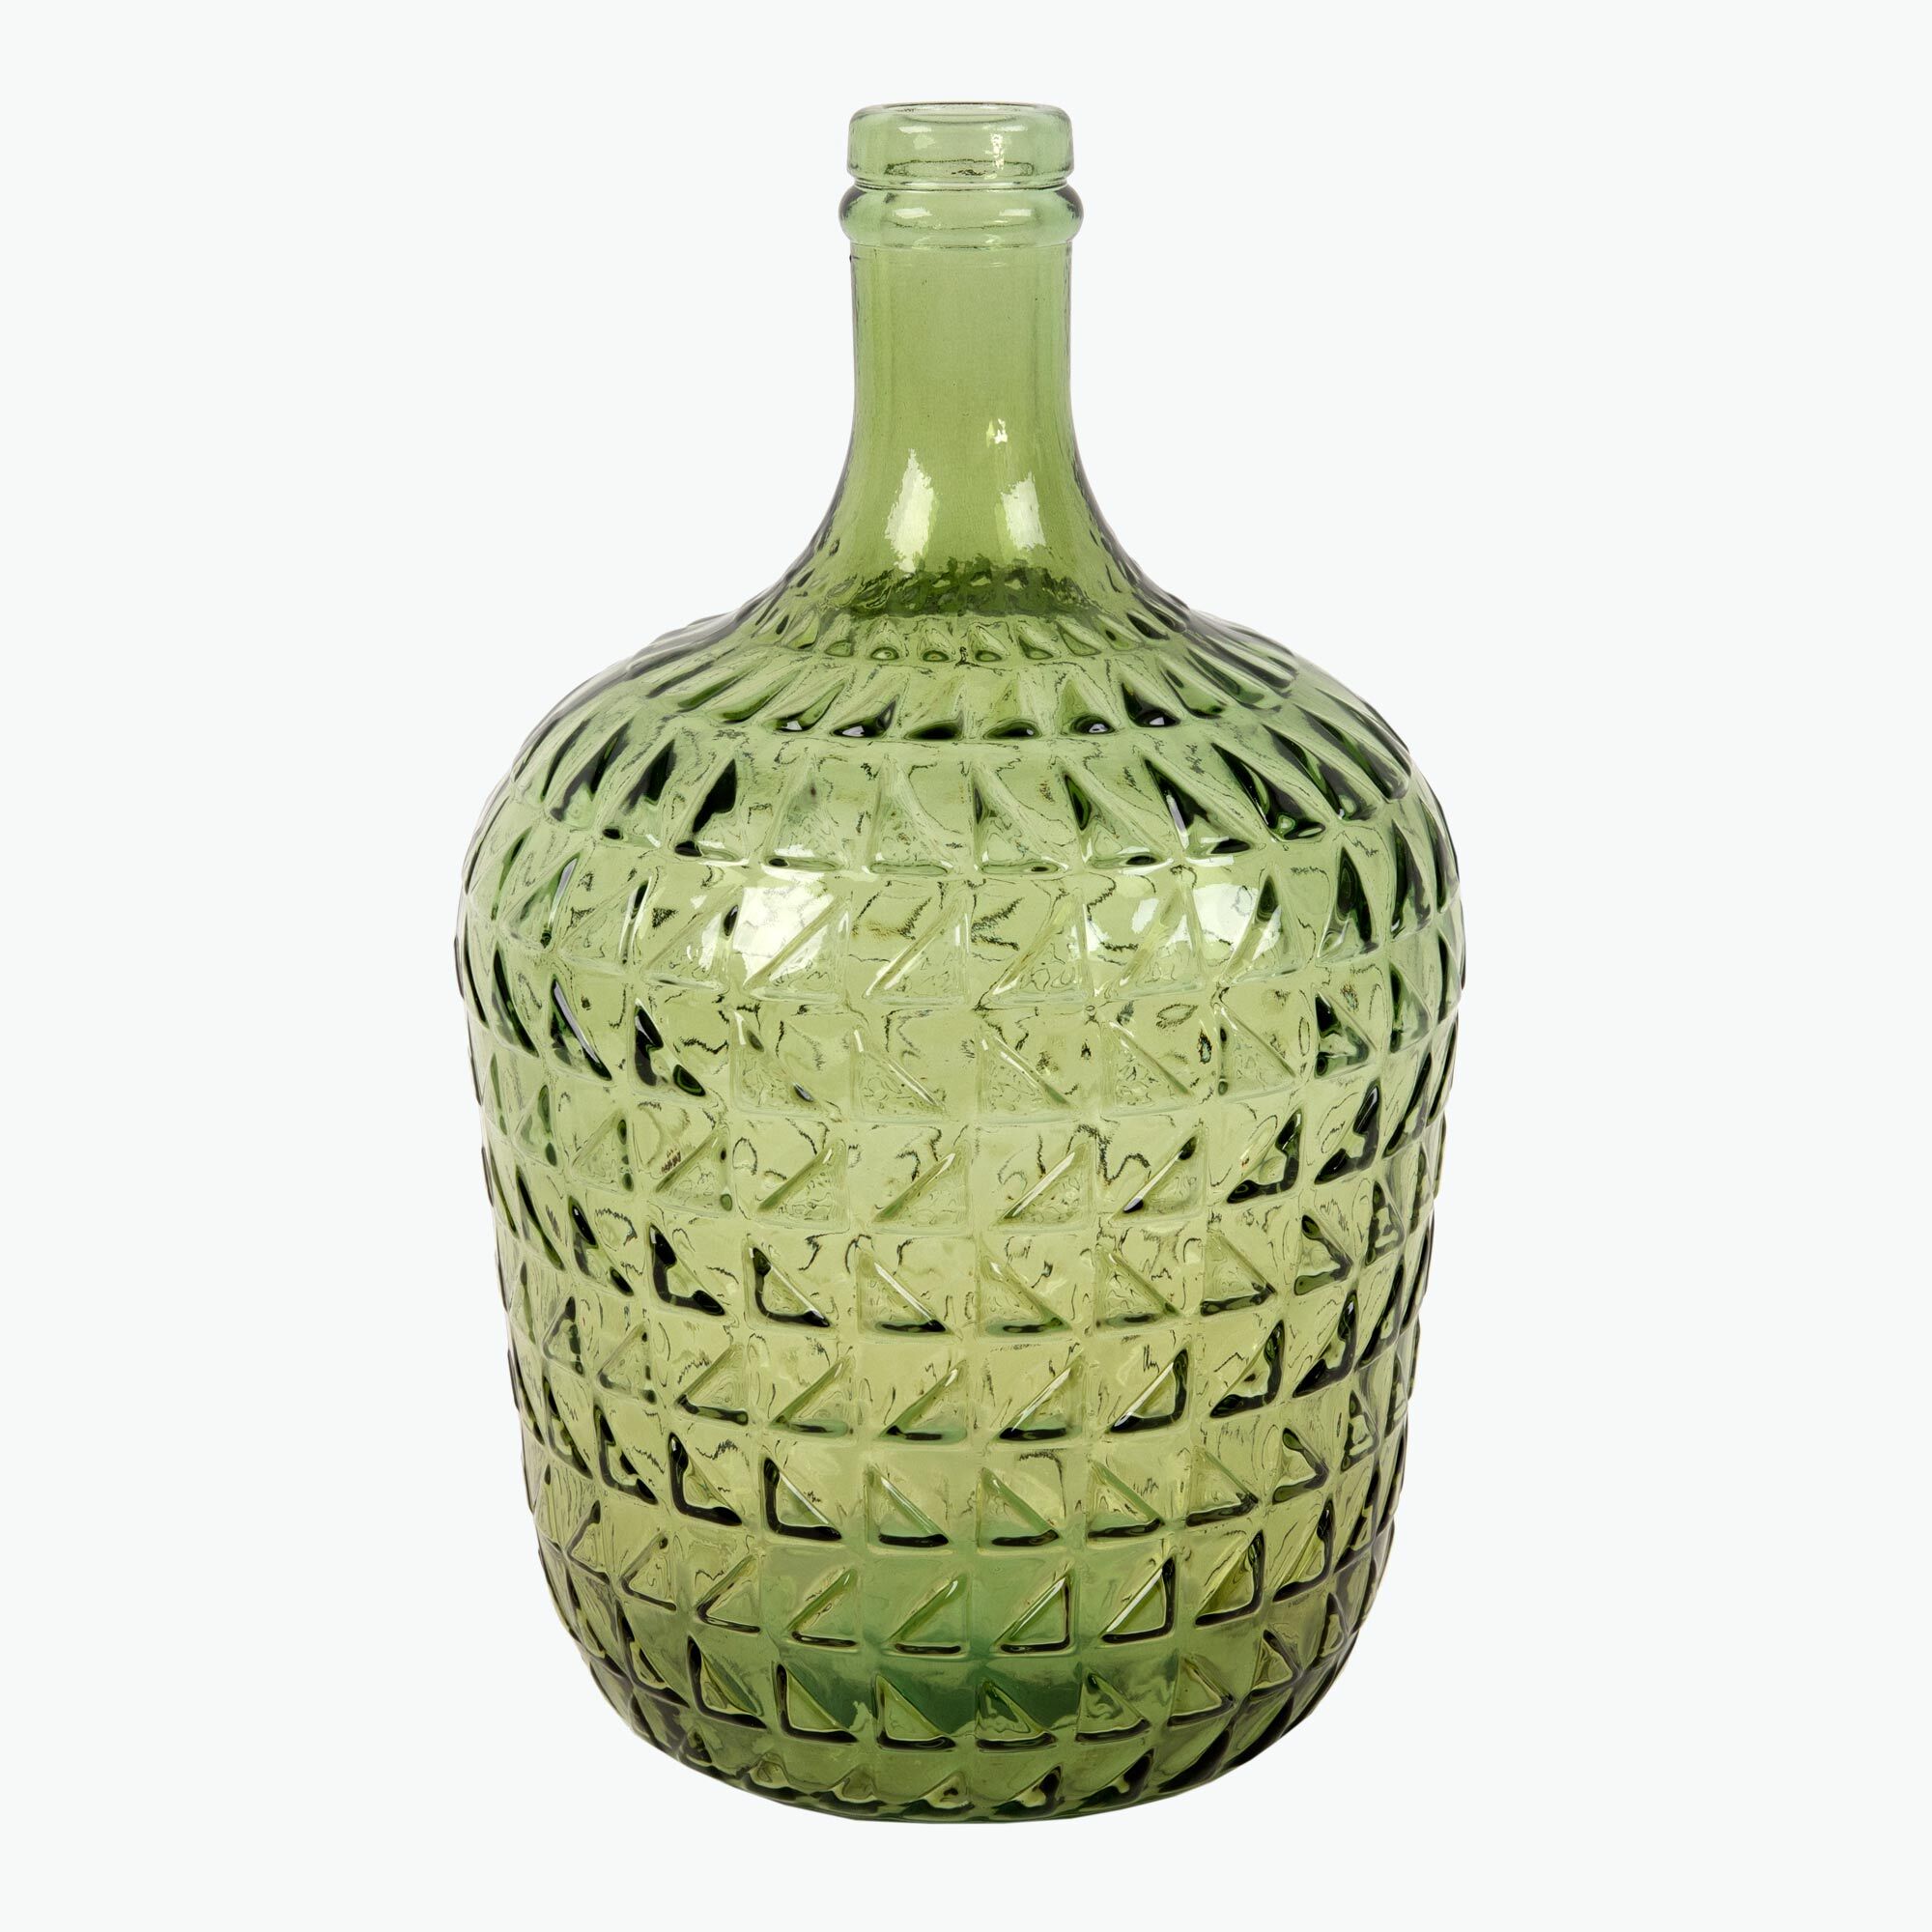 Catalania Olive dekorflaske/vase